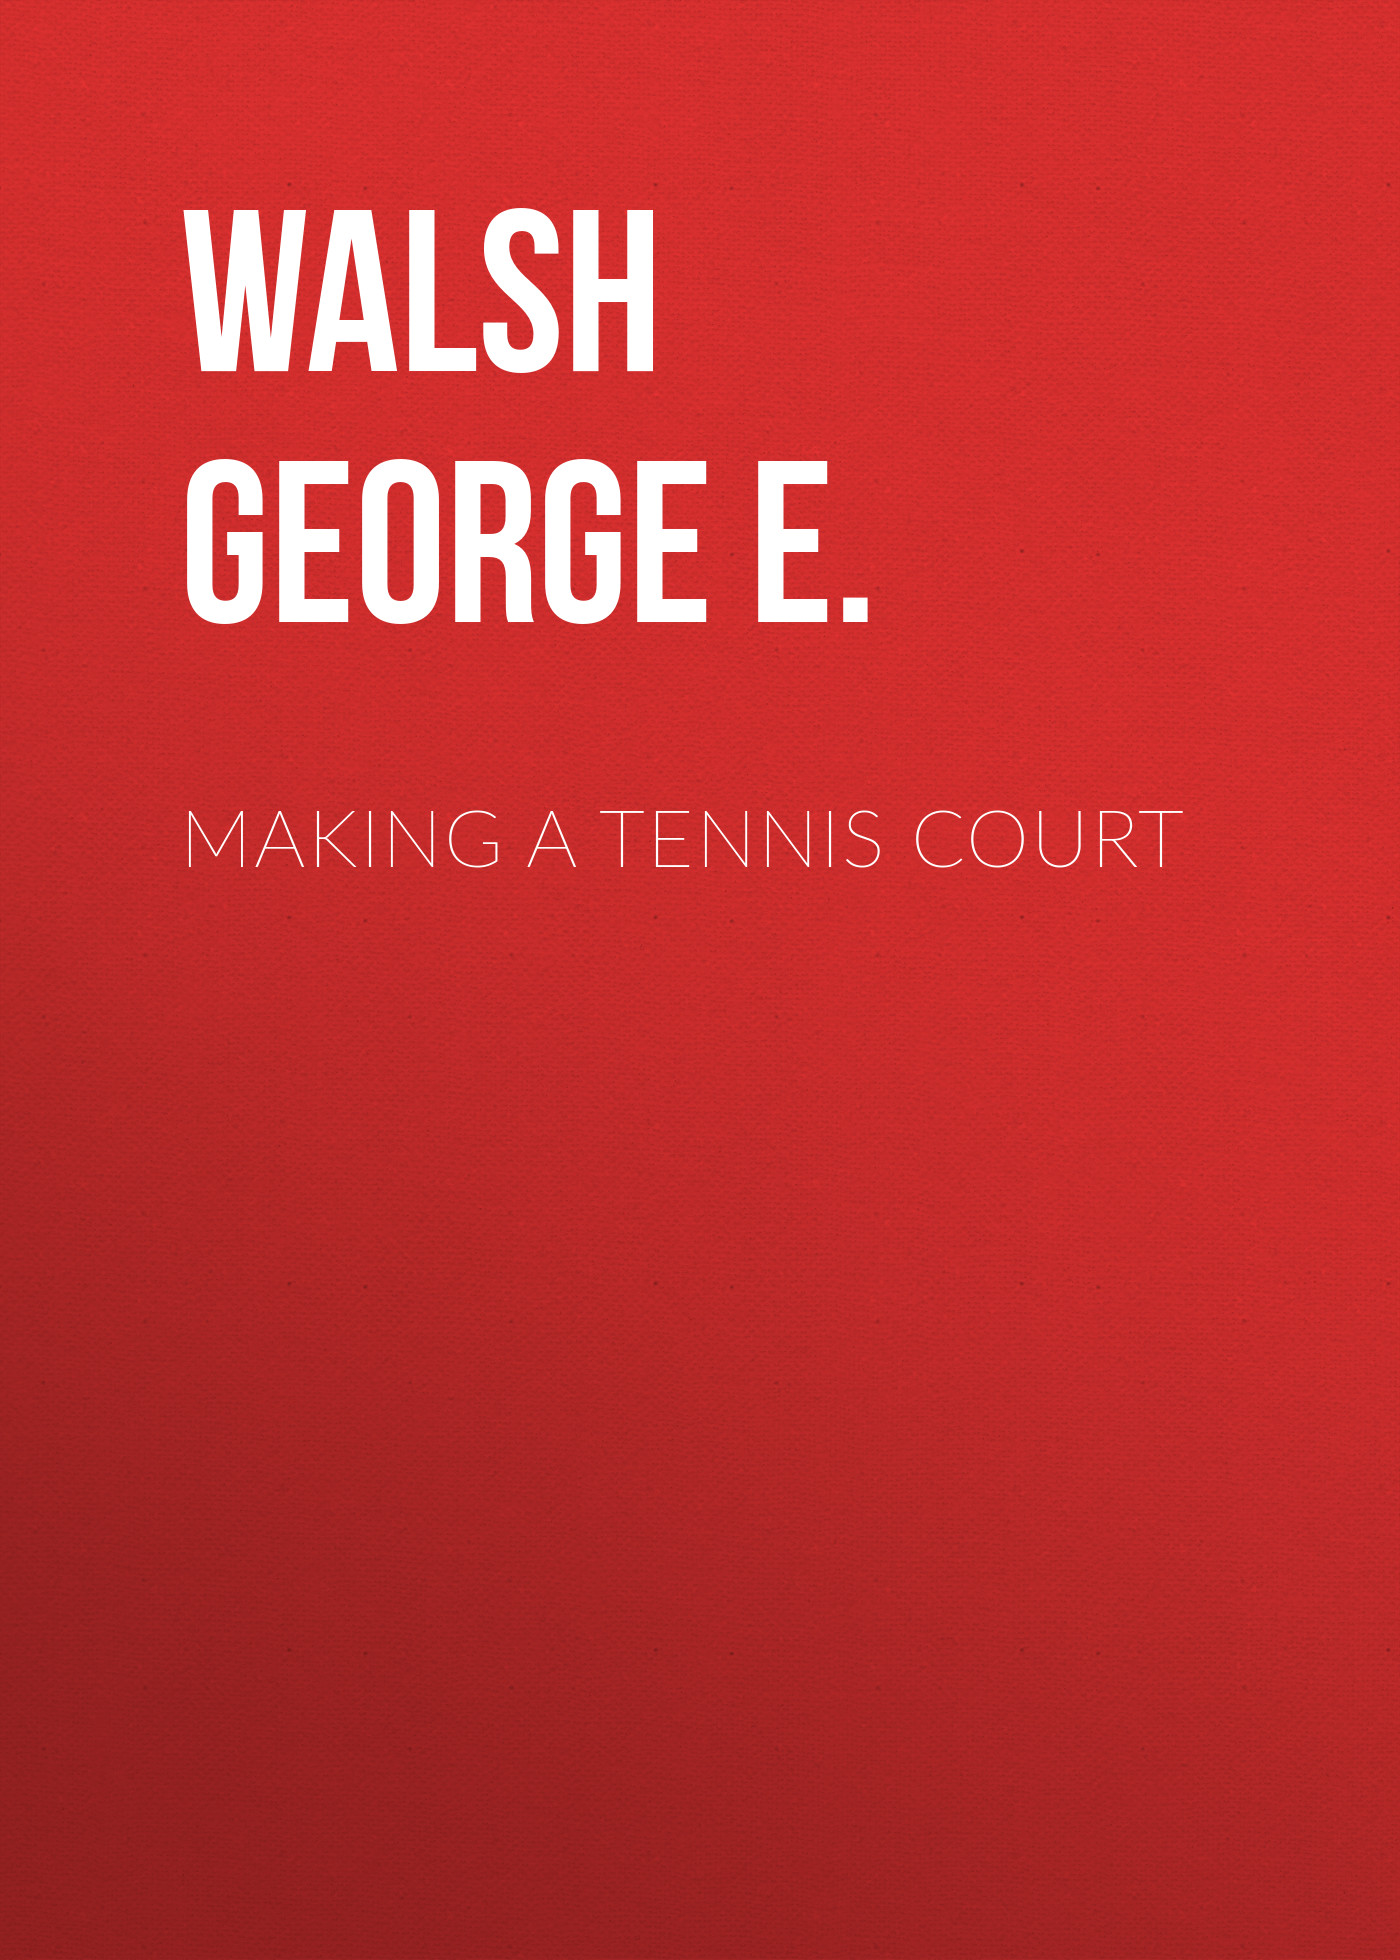 Книга Making a Tennis Court из серии , созданная George Walsh, может относится к жанру Зарубежная классика, Спорт, фитнес, Зарубежная старинная литература. Стоимость электронной книги Making a Tennis Court с идентификатором 34282656 составляет 0 руб.